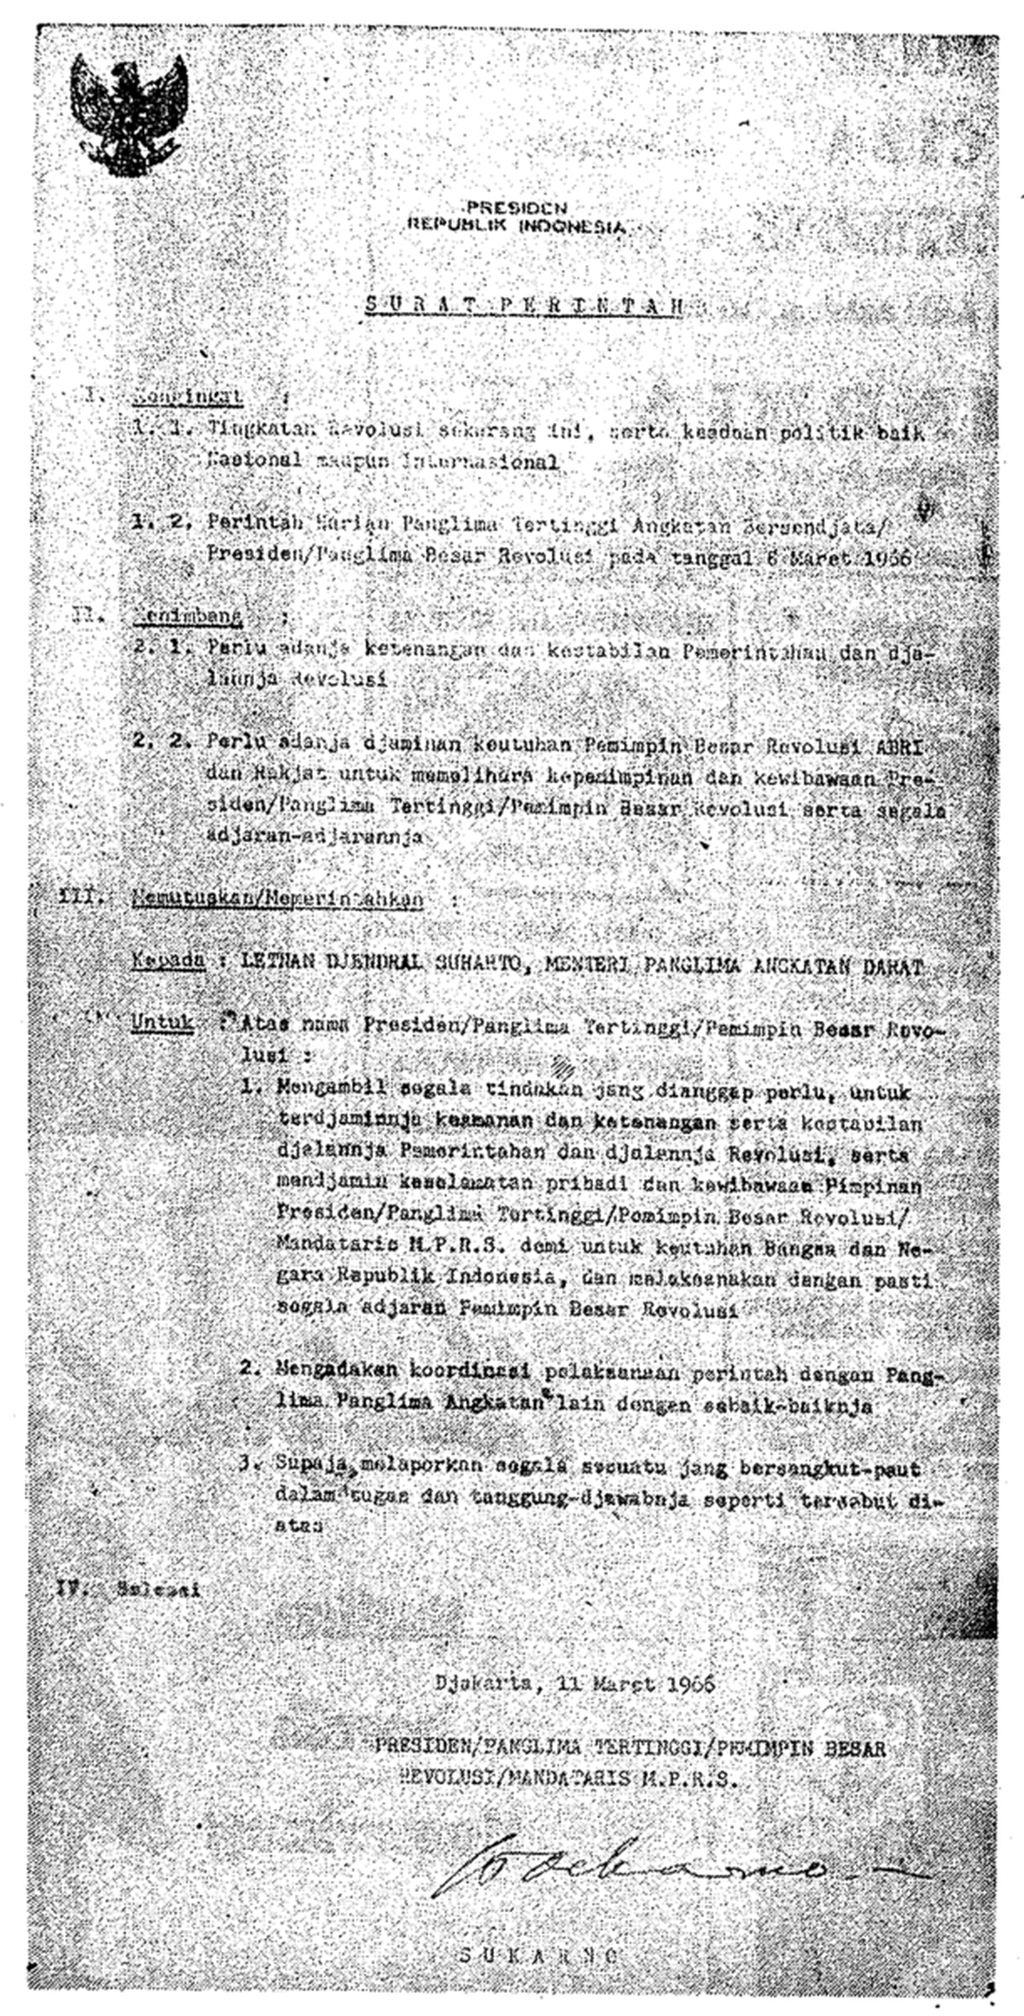 Salinan naskah Supersemar (Surat Perintah Sebelas Maret) 1966 yang dimuat di Kompas, 14 Maret 1966, hlm 3.